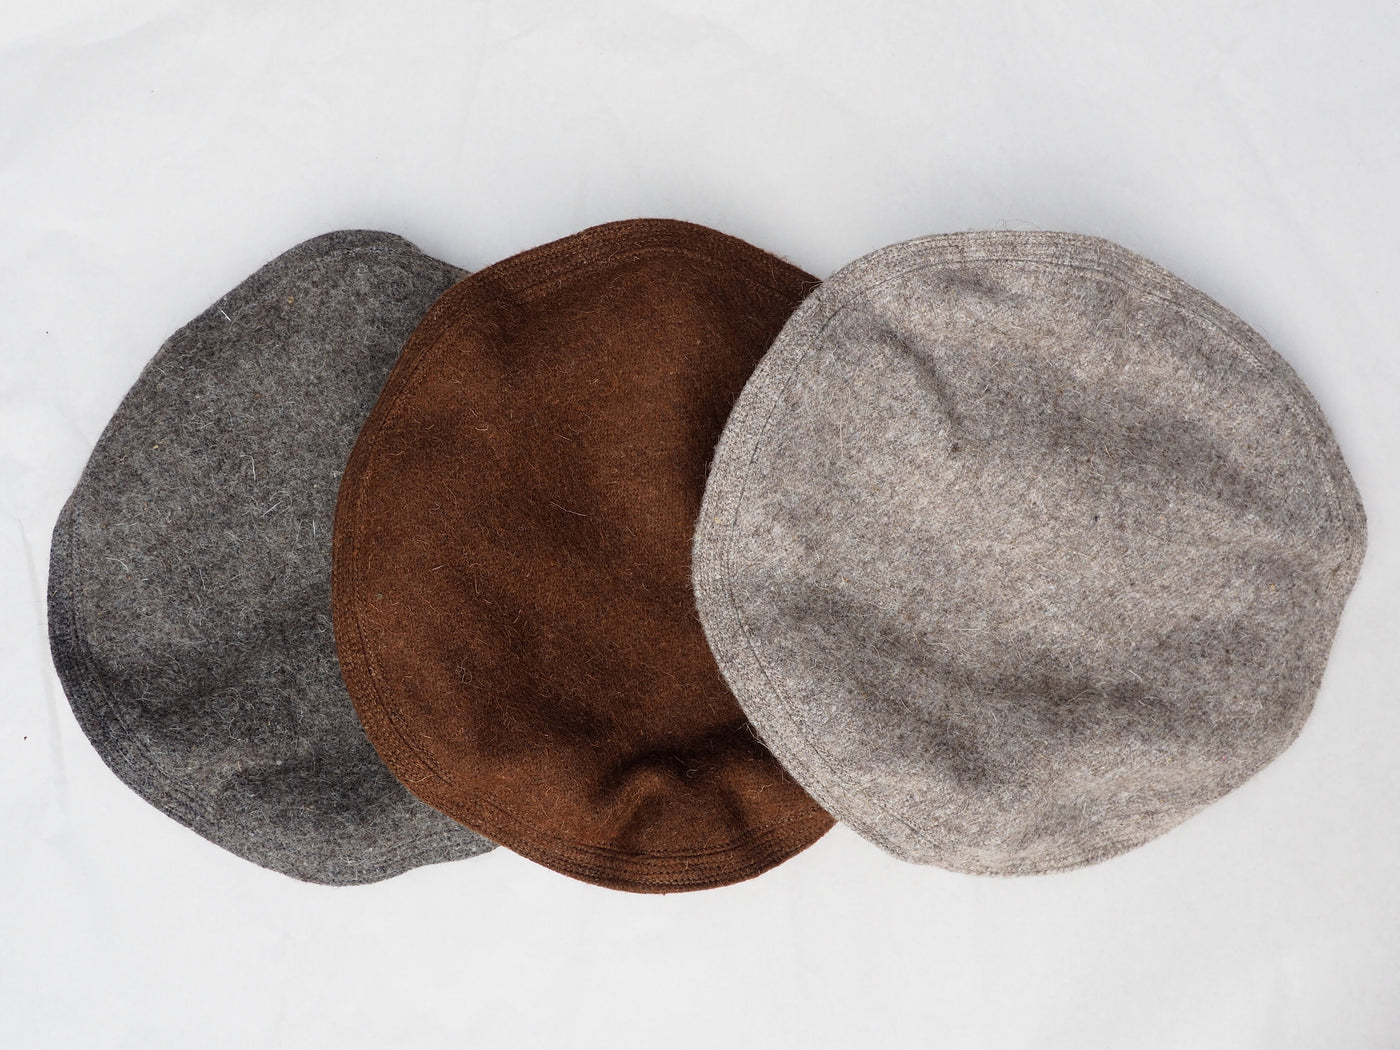 Original Afghanische Premiumqualität  Afghan Kopfbedeckung Pakol Mütze wollomütze Pakistan Grau und Braun  Orientsbazar   